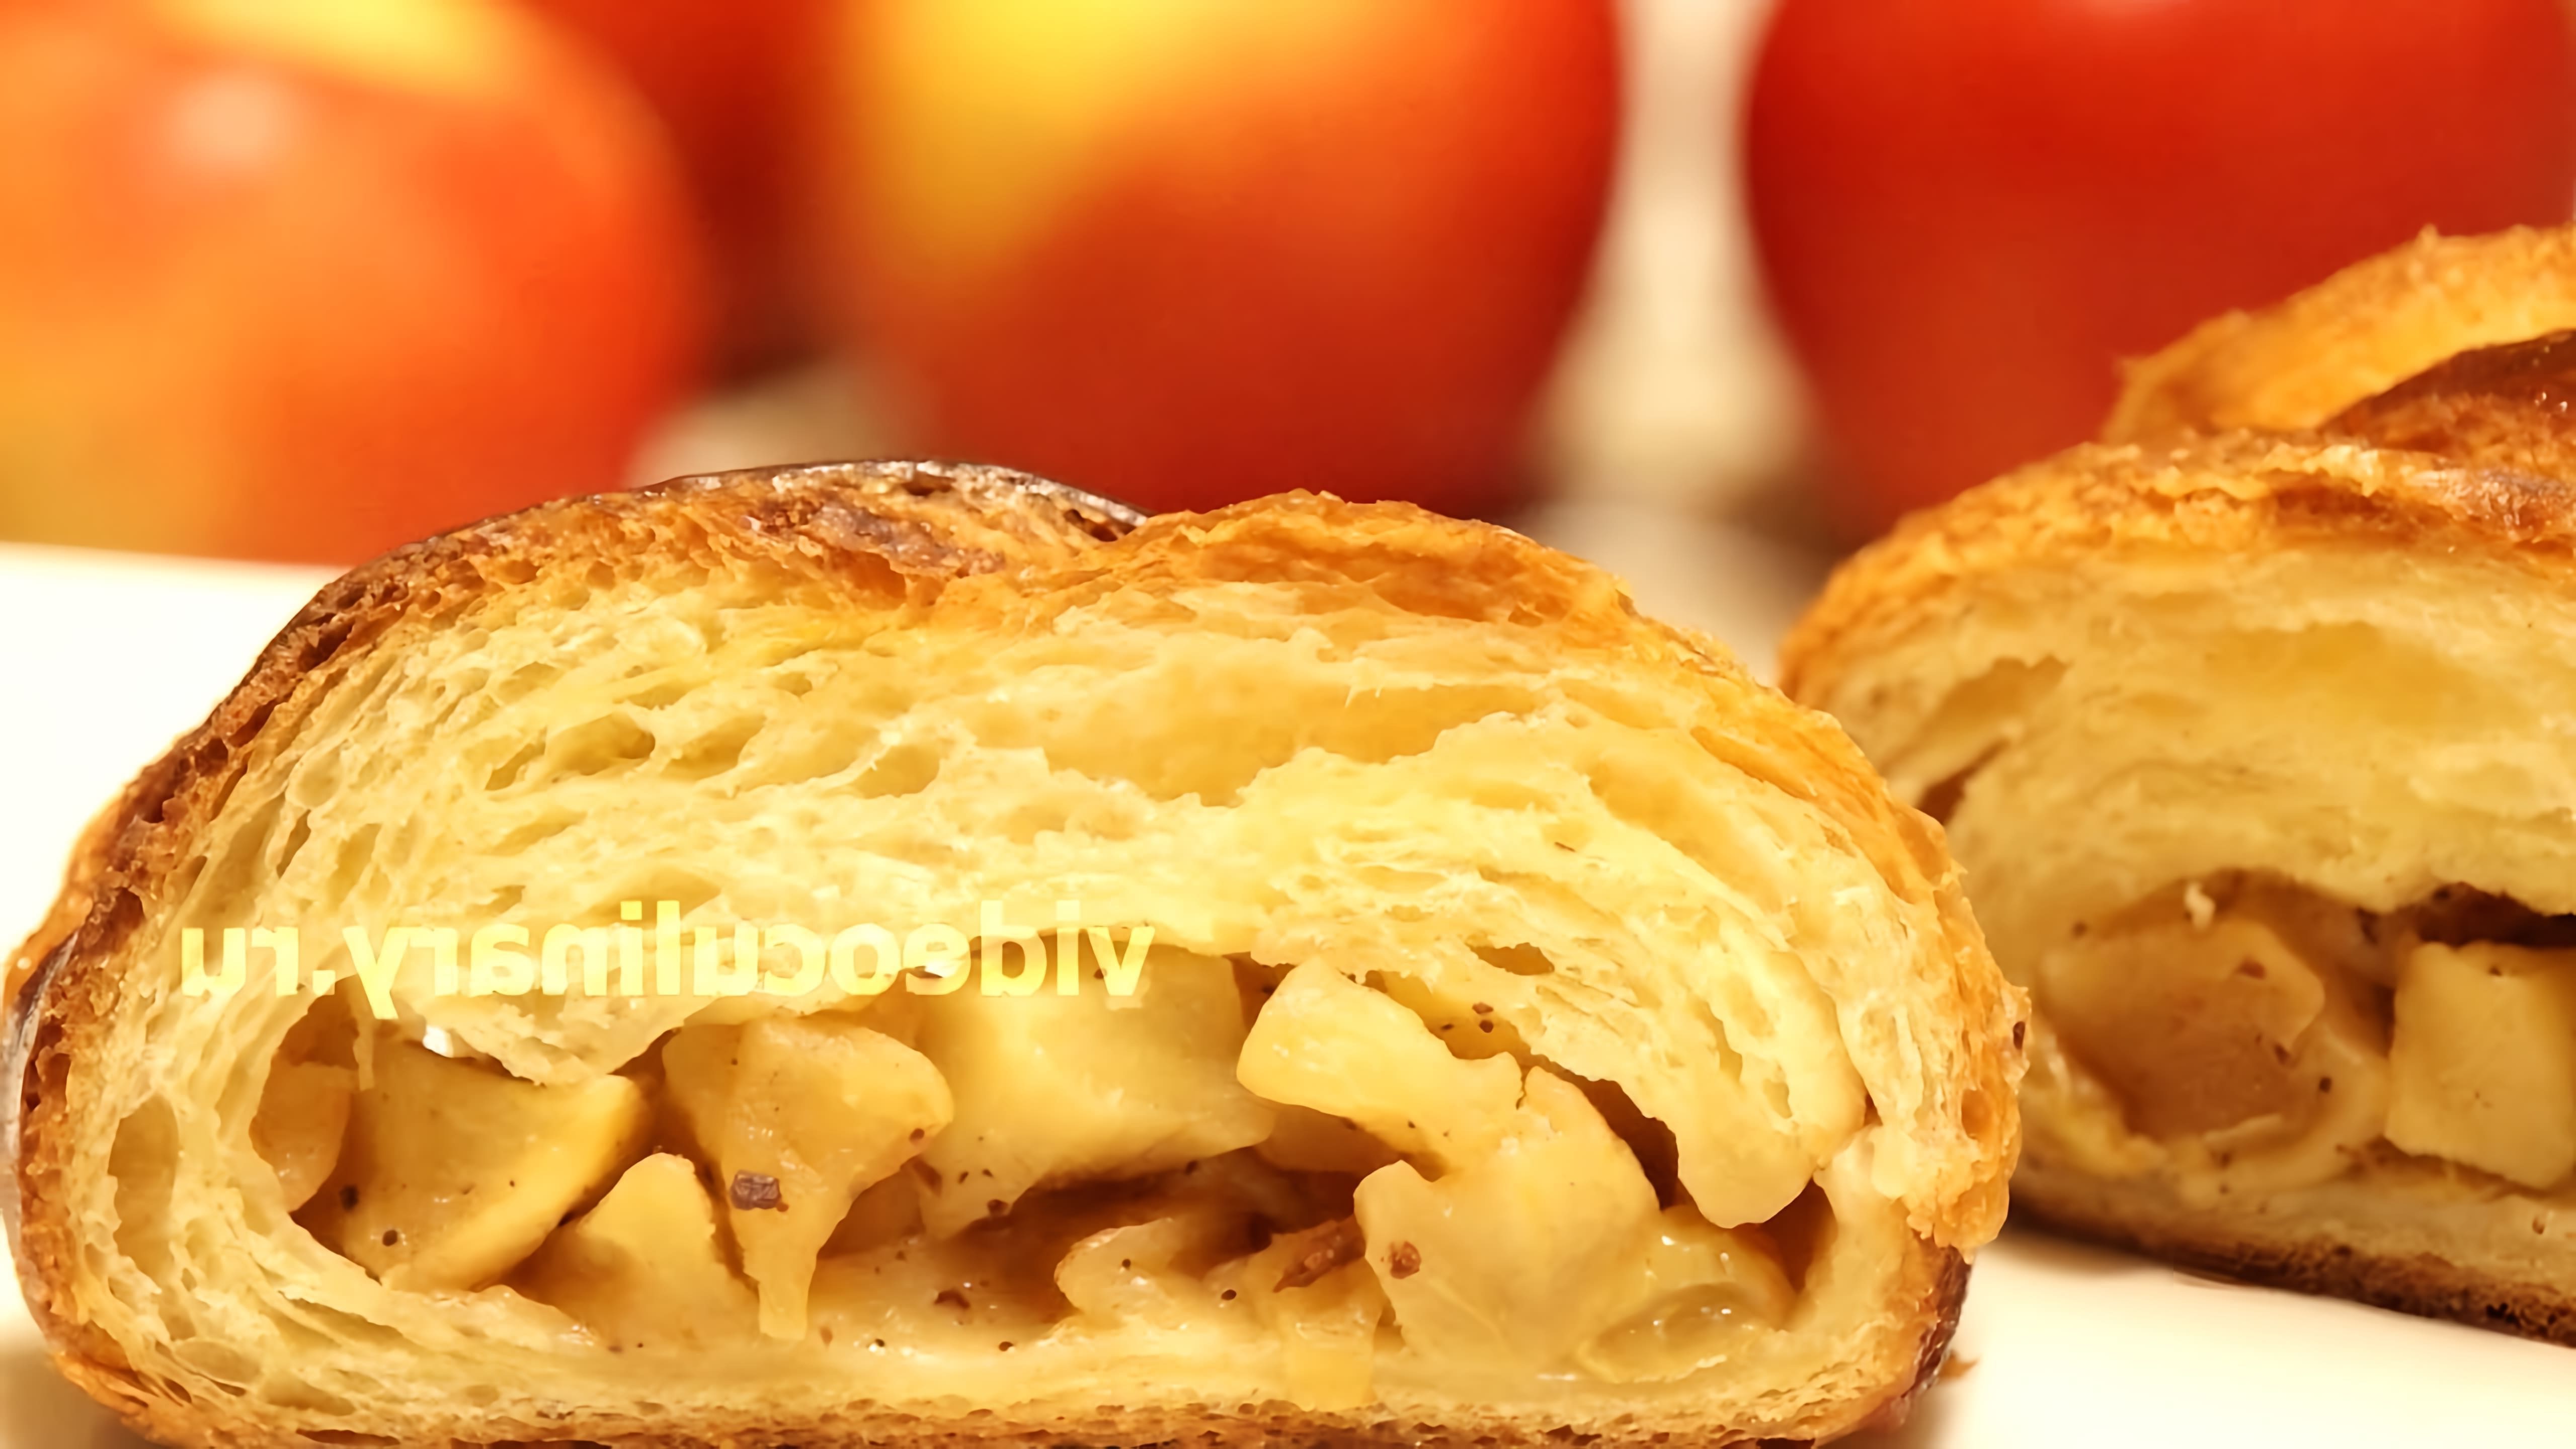 В этом видео демонстрируется рецепт приготовления яблочного пирога из дрожжевого слоеного теста